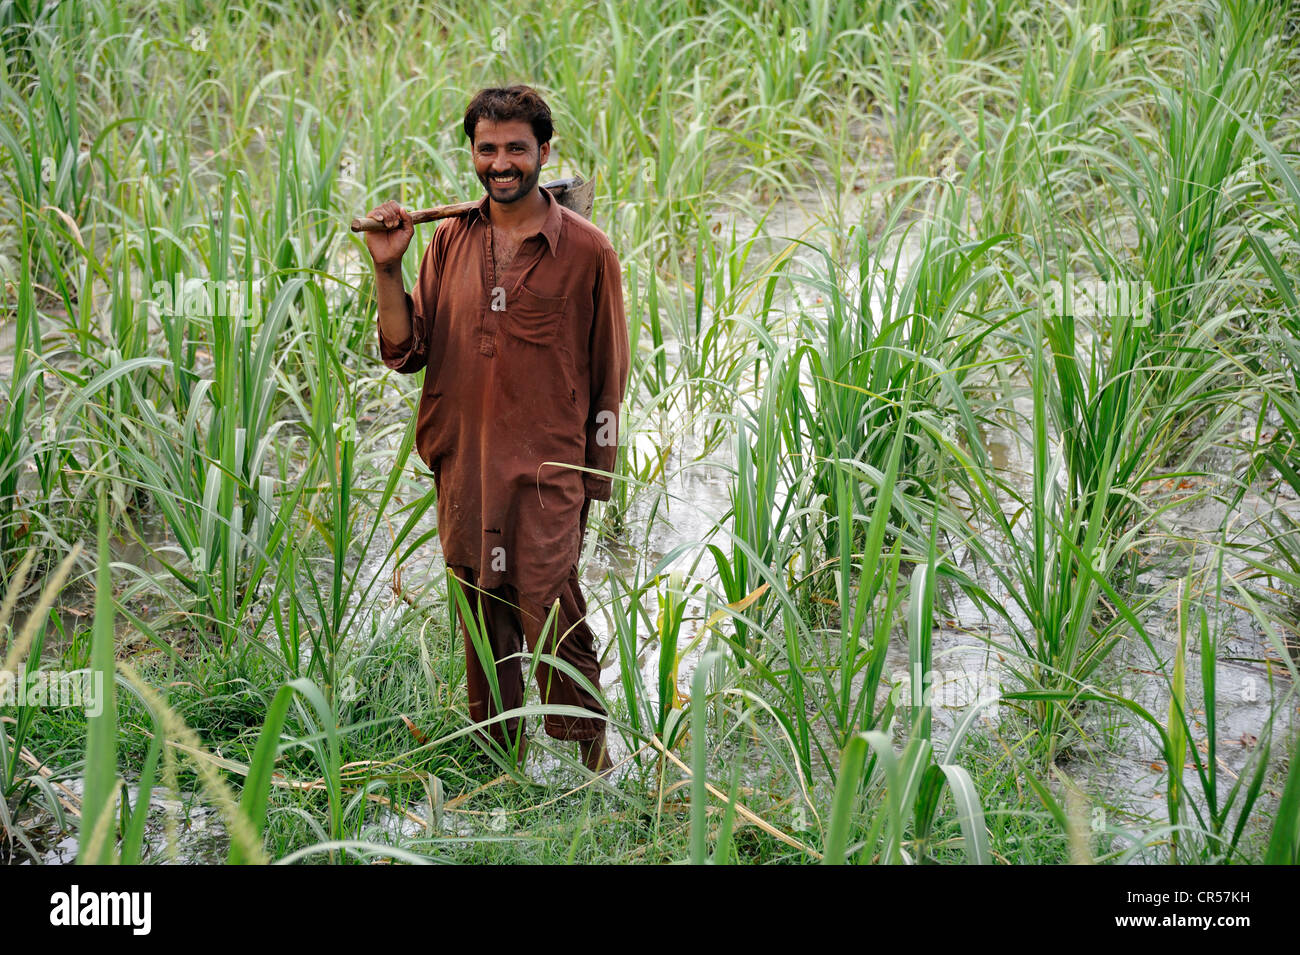 Smiling man holding une binette dans un champ de maïs irrigué, Lehar Basti Walla village, Punjab, Pakistan, Asie Banque D'Images